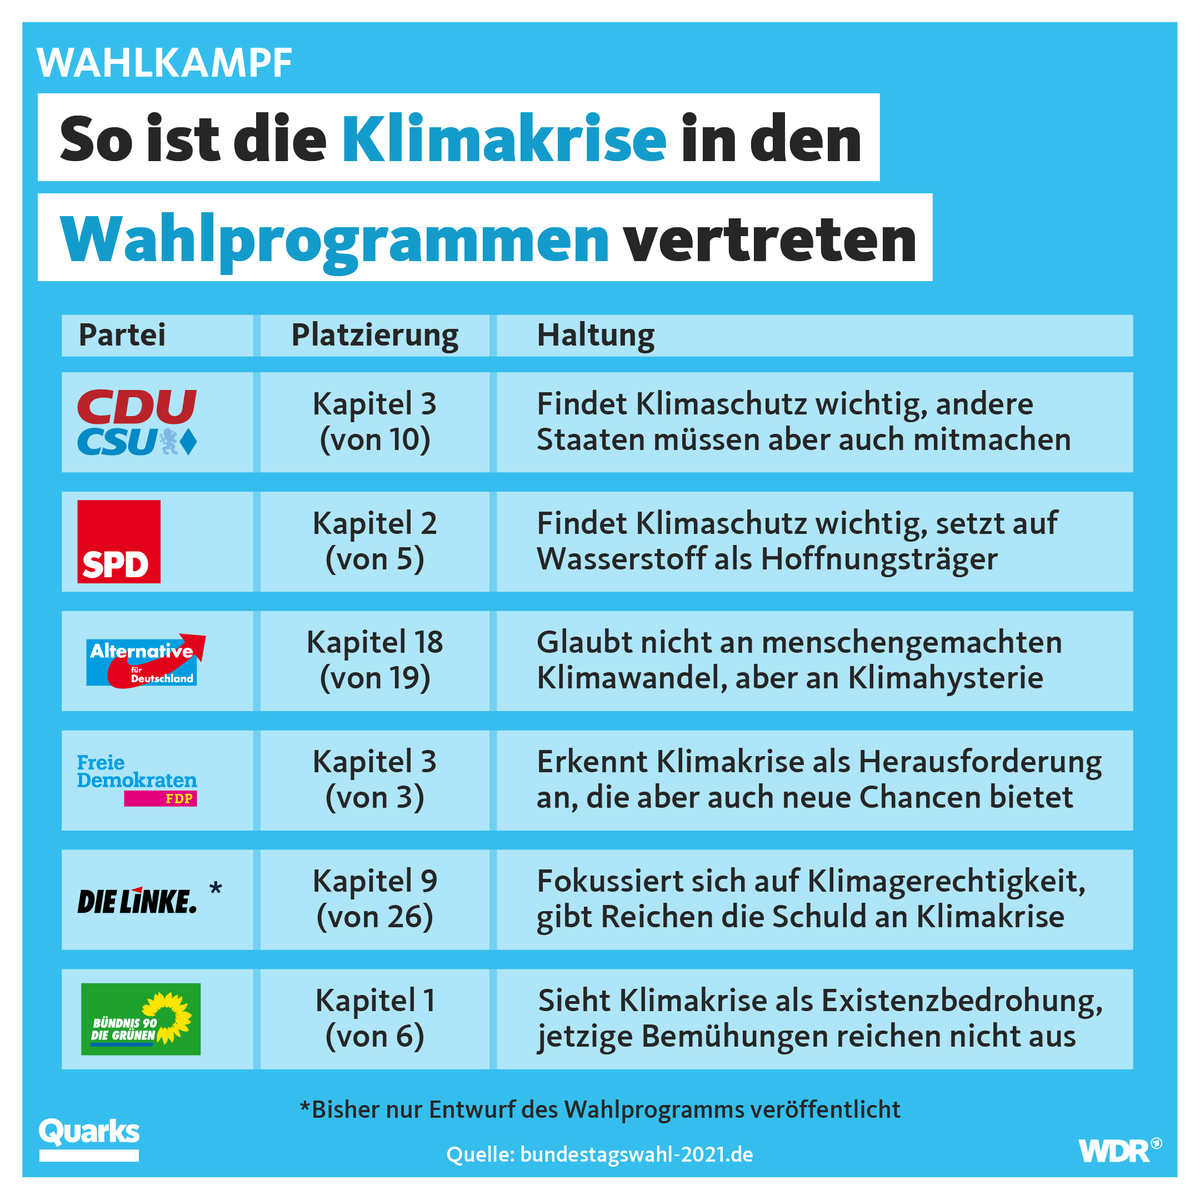 Das wichtigste politische Problem in Deutschland: Klima- und Umweltschutz, finden 28% der befragten Wähler:innen. Wir haben geschaut, wo das Thema in den Wahlprogrammen steht.